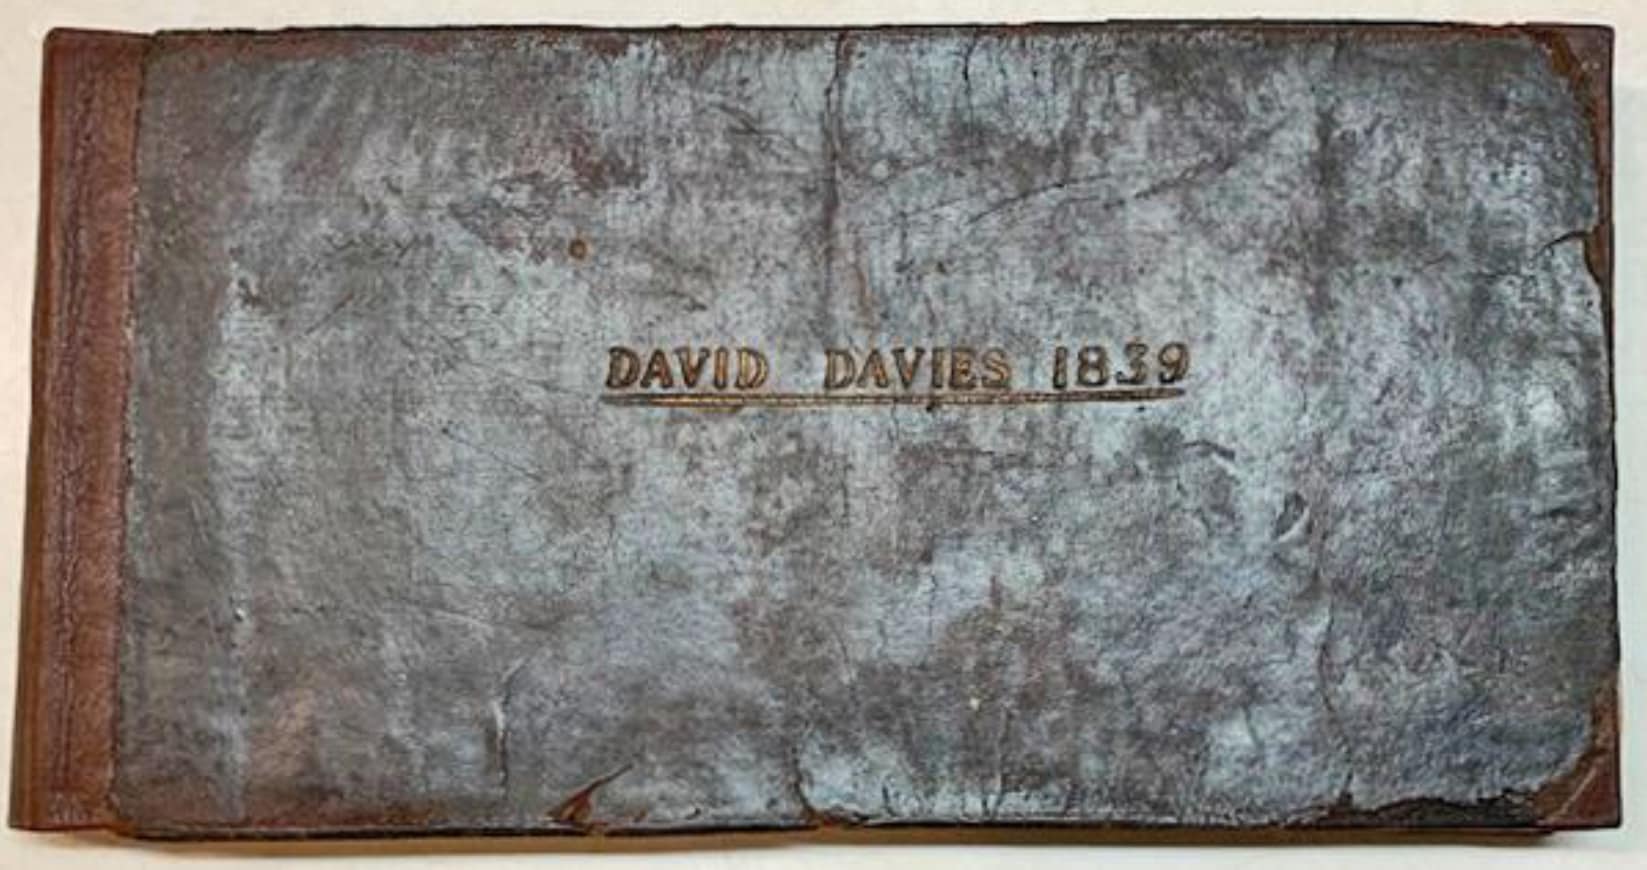 Choir book, David Davies 1839, cover